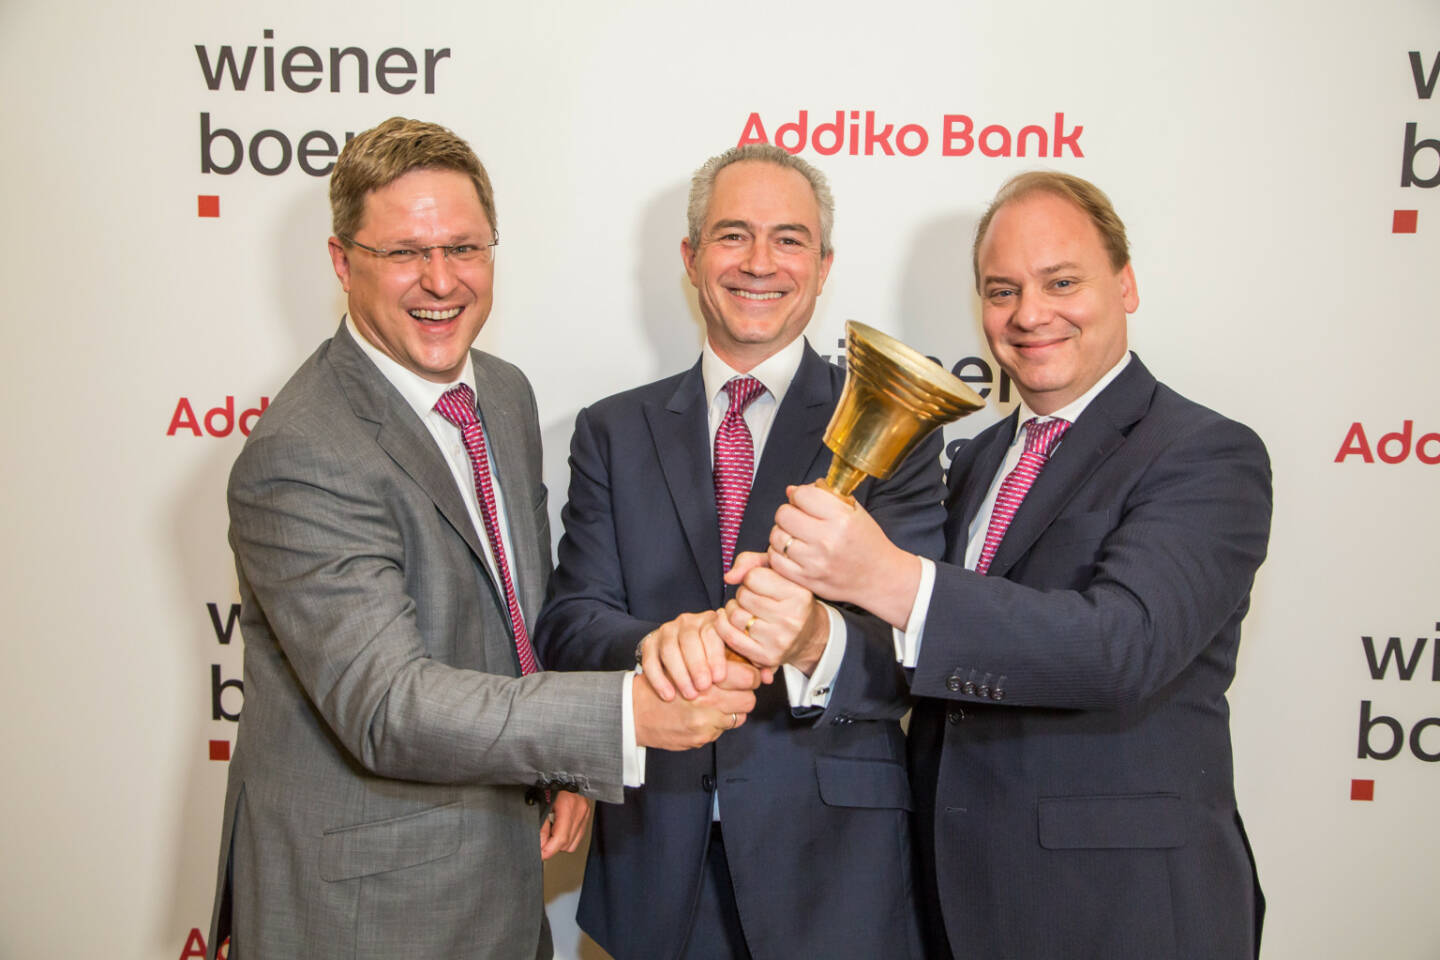 Addiko-Vorstandsteam: Csongor Németh (Chief Corporate & SME Banking Officer), CEO Razvan Munteanu, CFO Johannes Proksch, Quelle: Wiener Börse